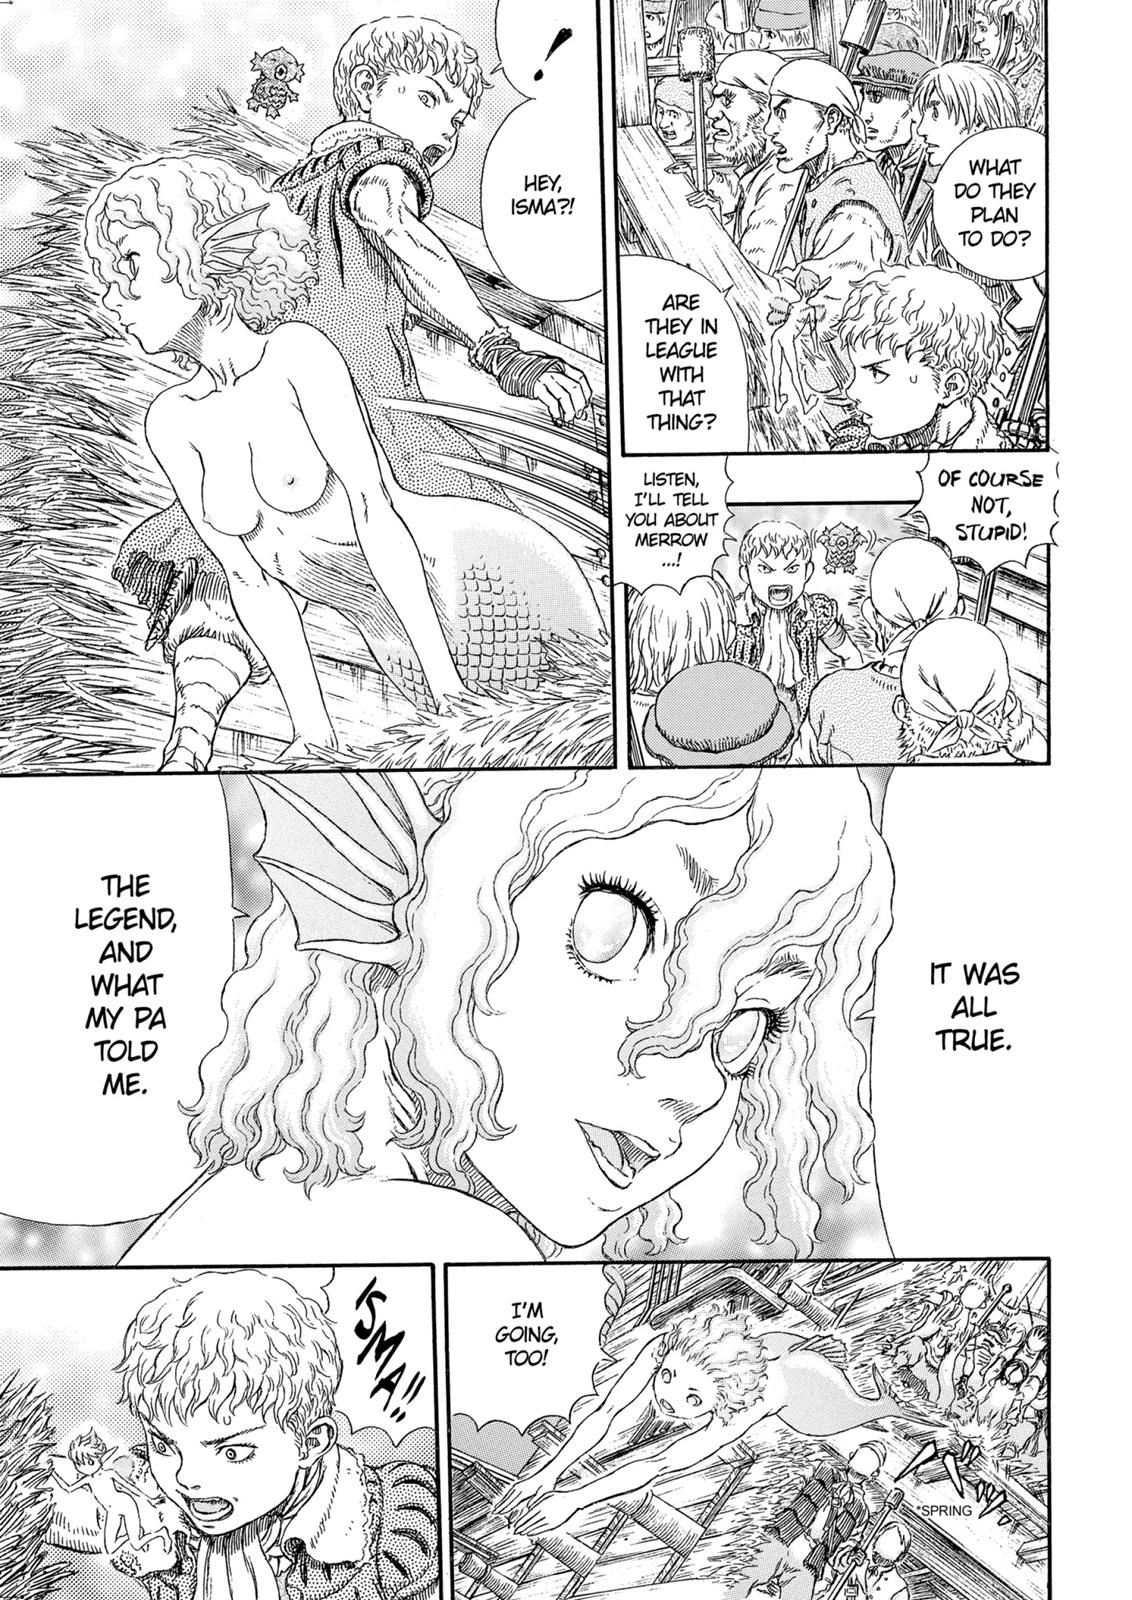 Berserk Manga Chapter 324 image 17